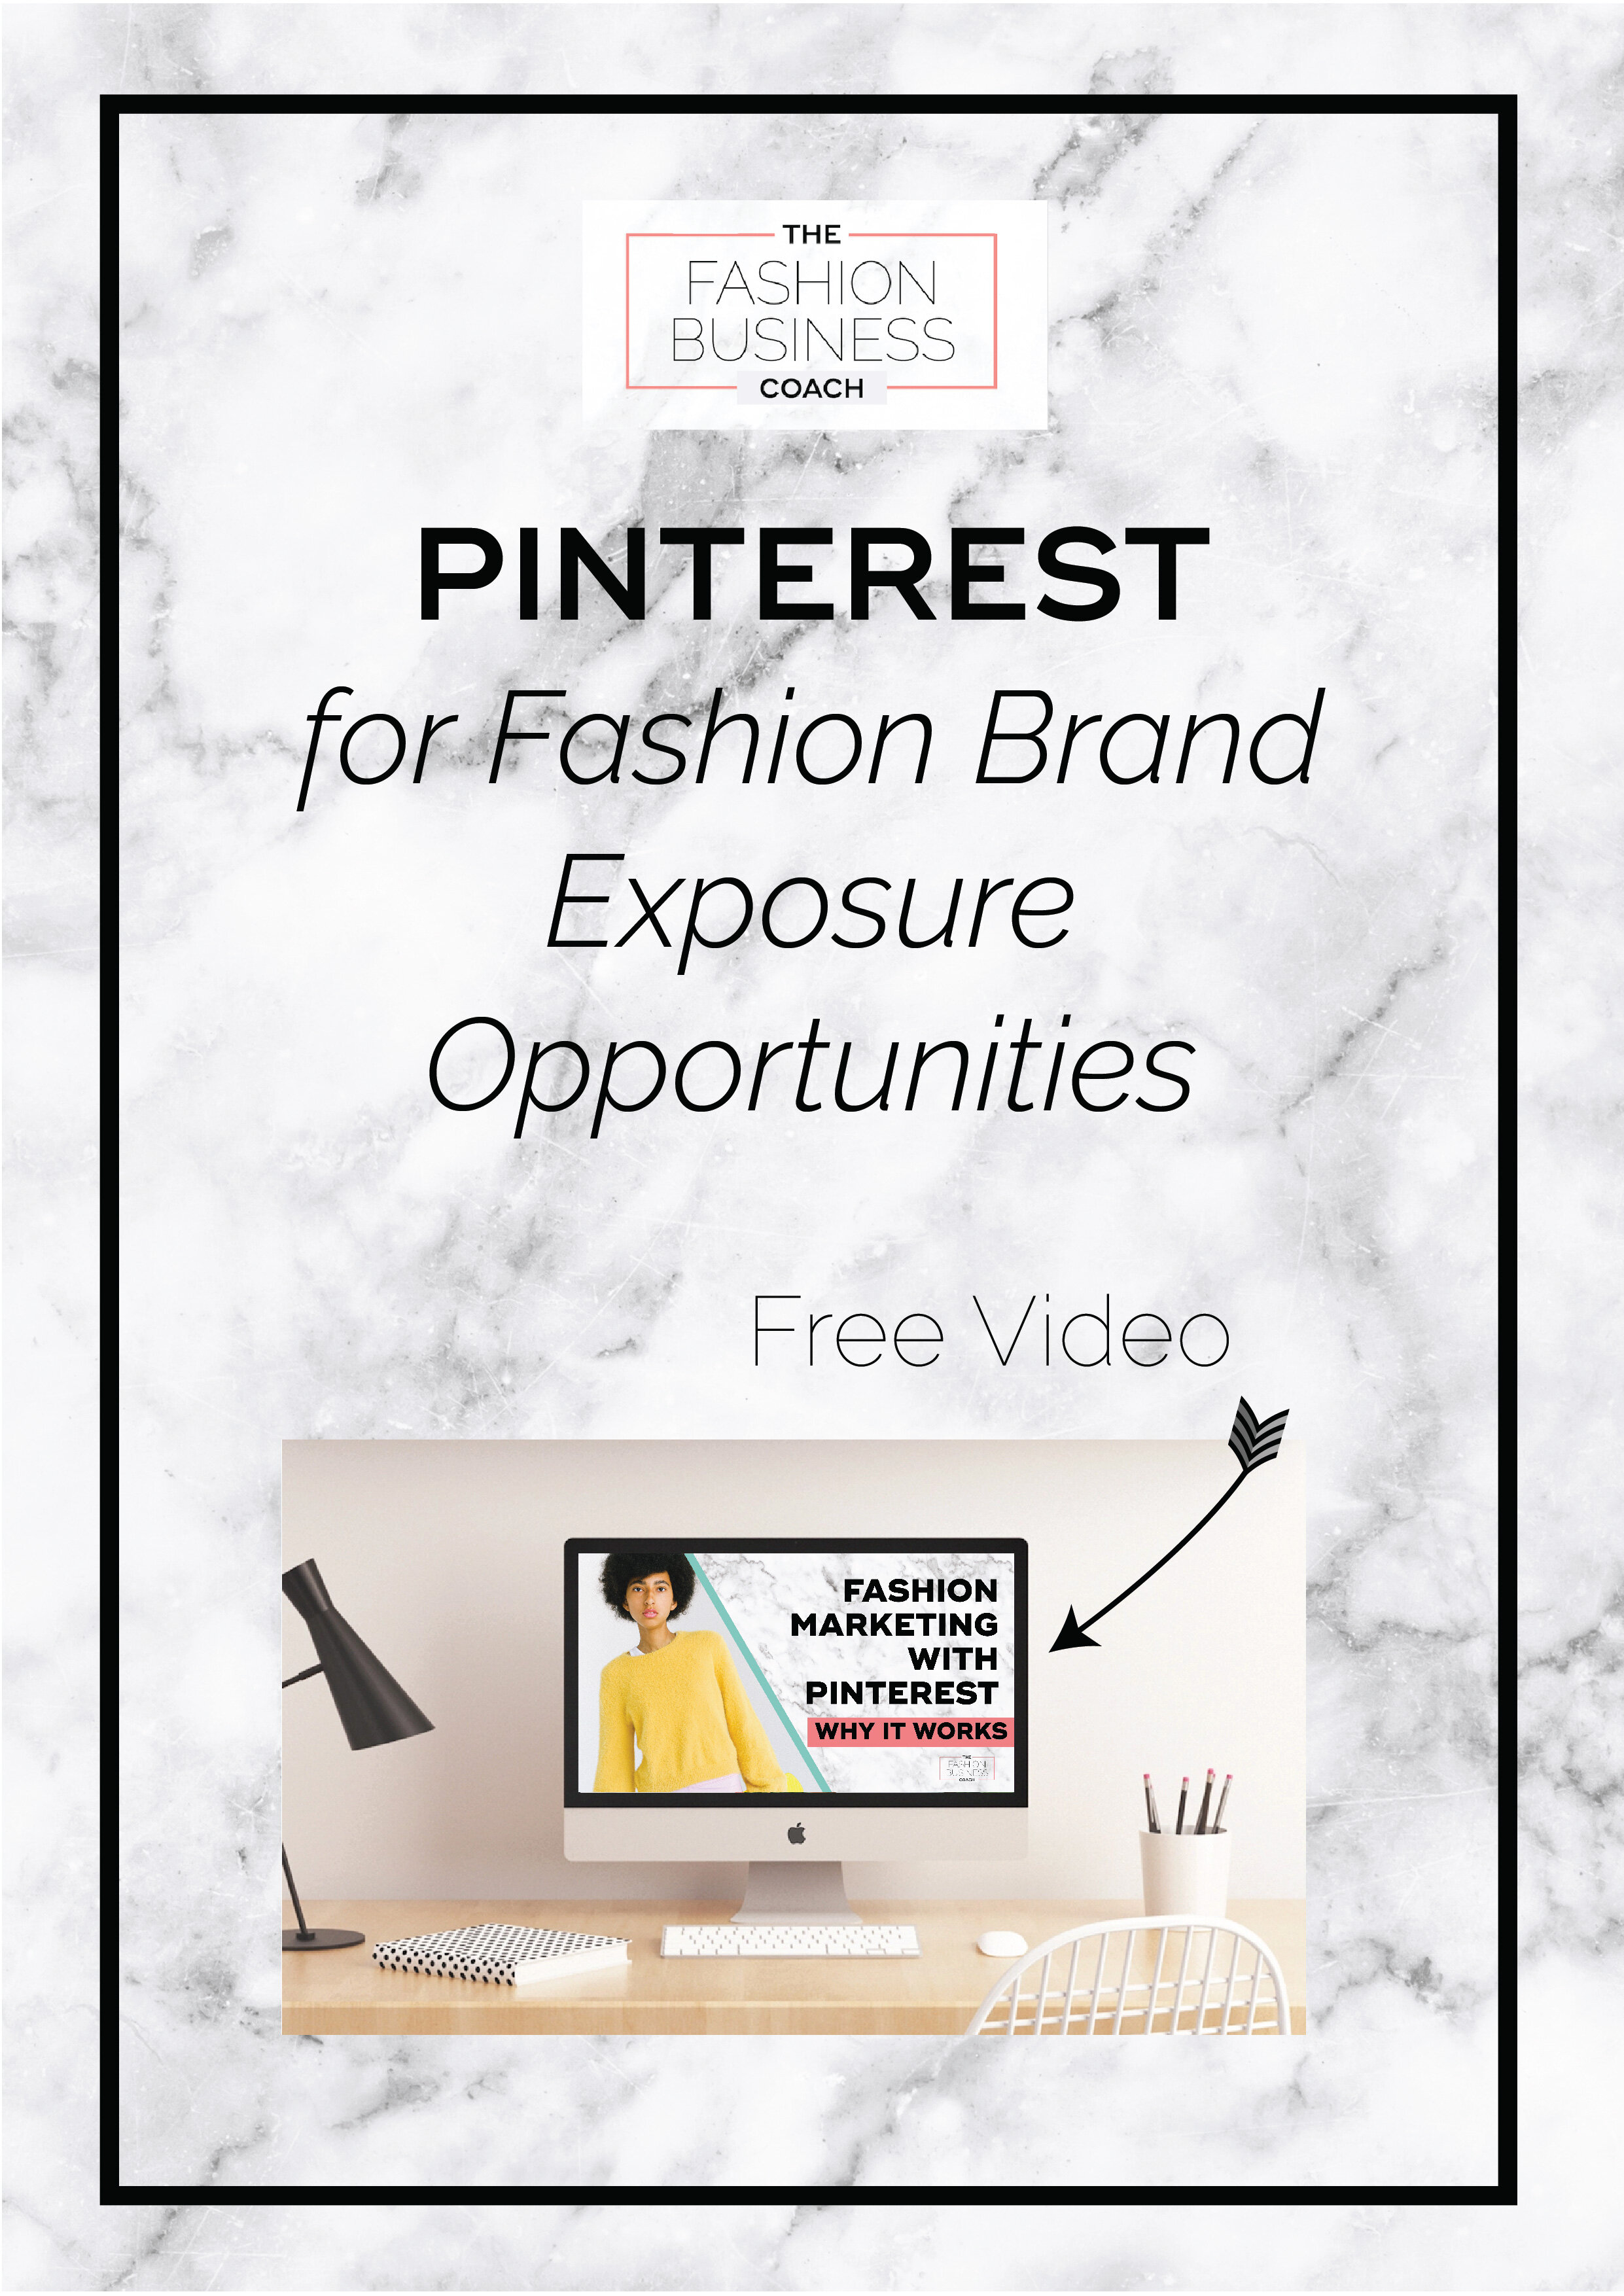 Pinterest for Fashion Brand Exposure Opportunities2.jpg